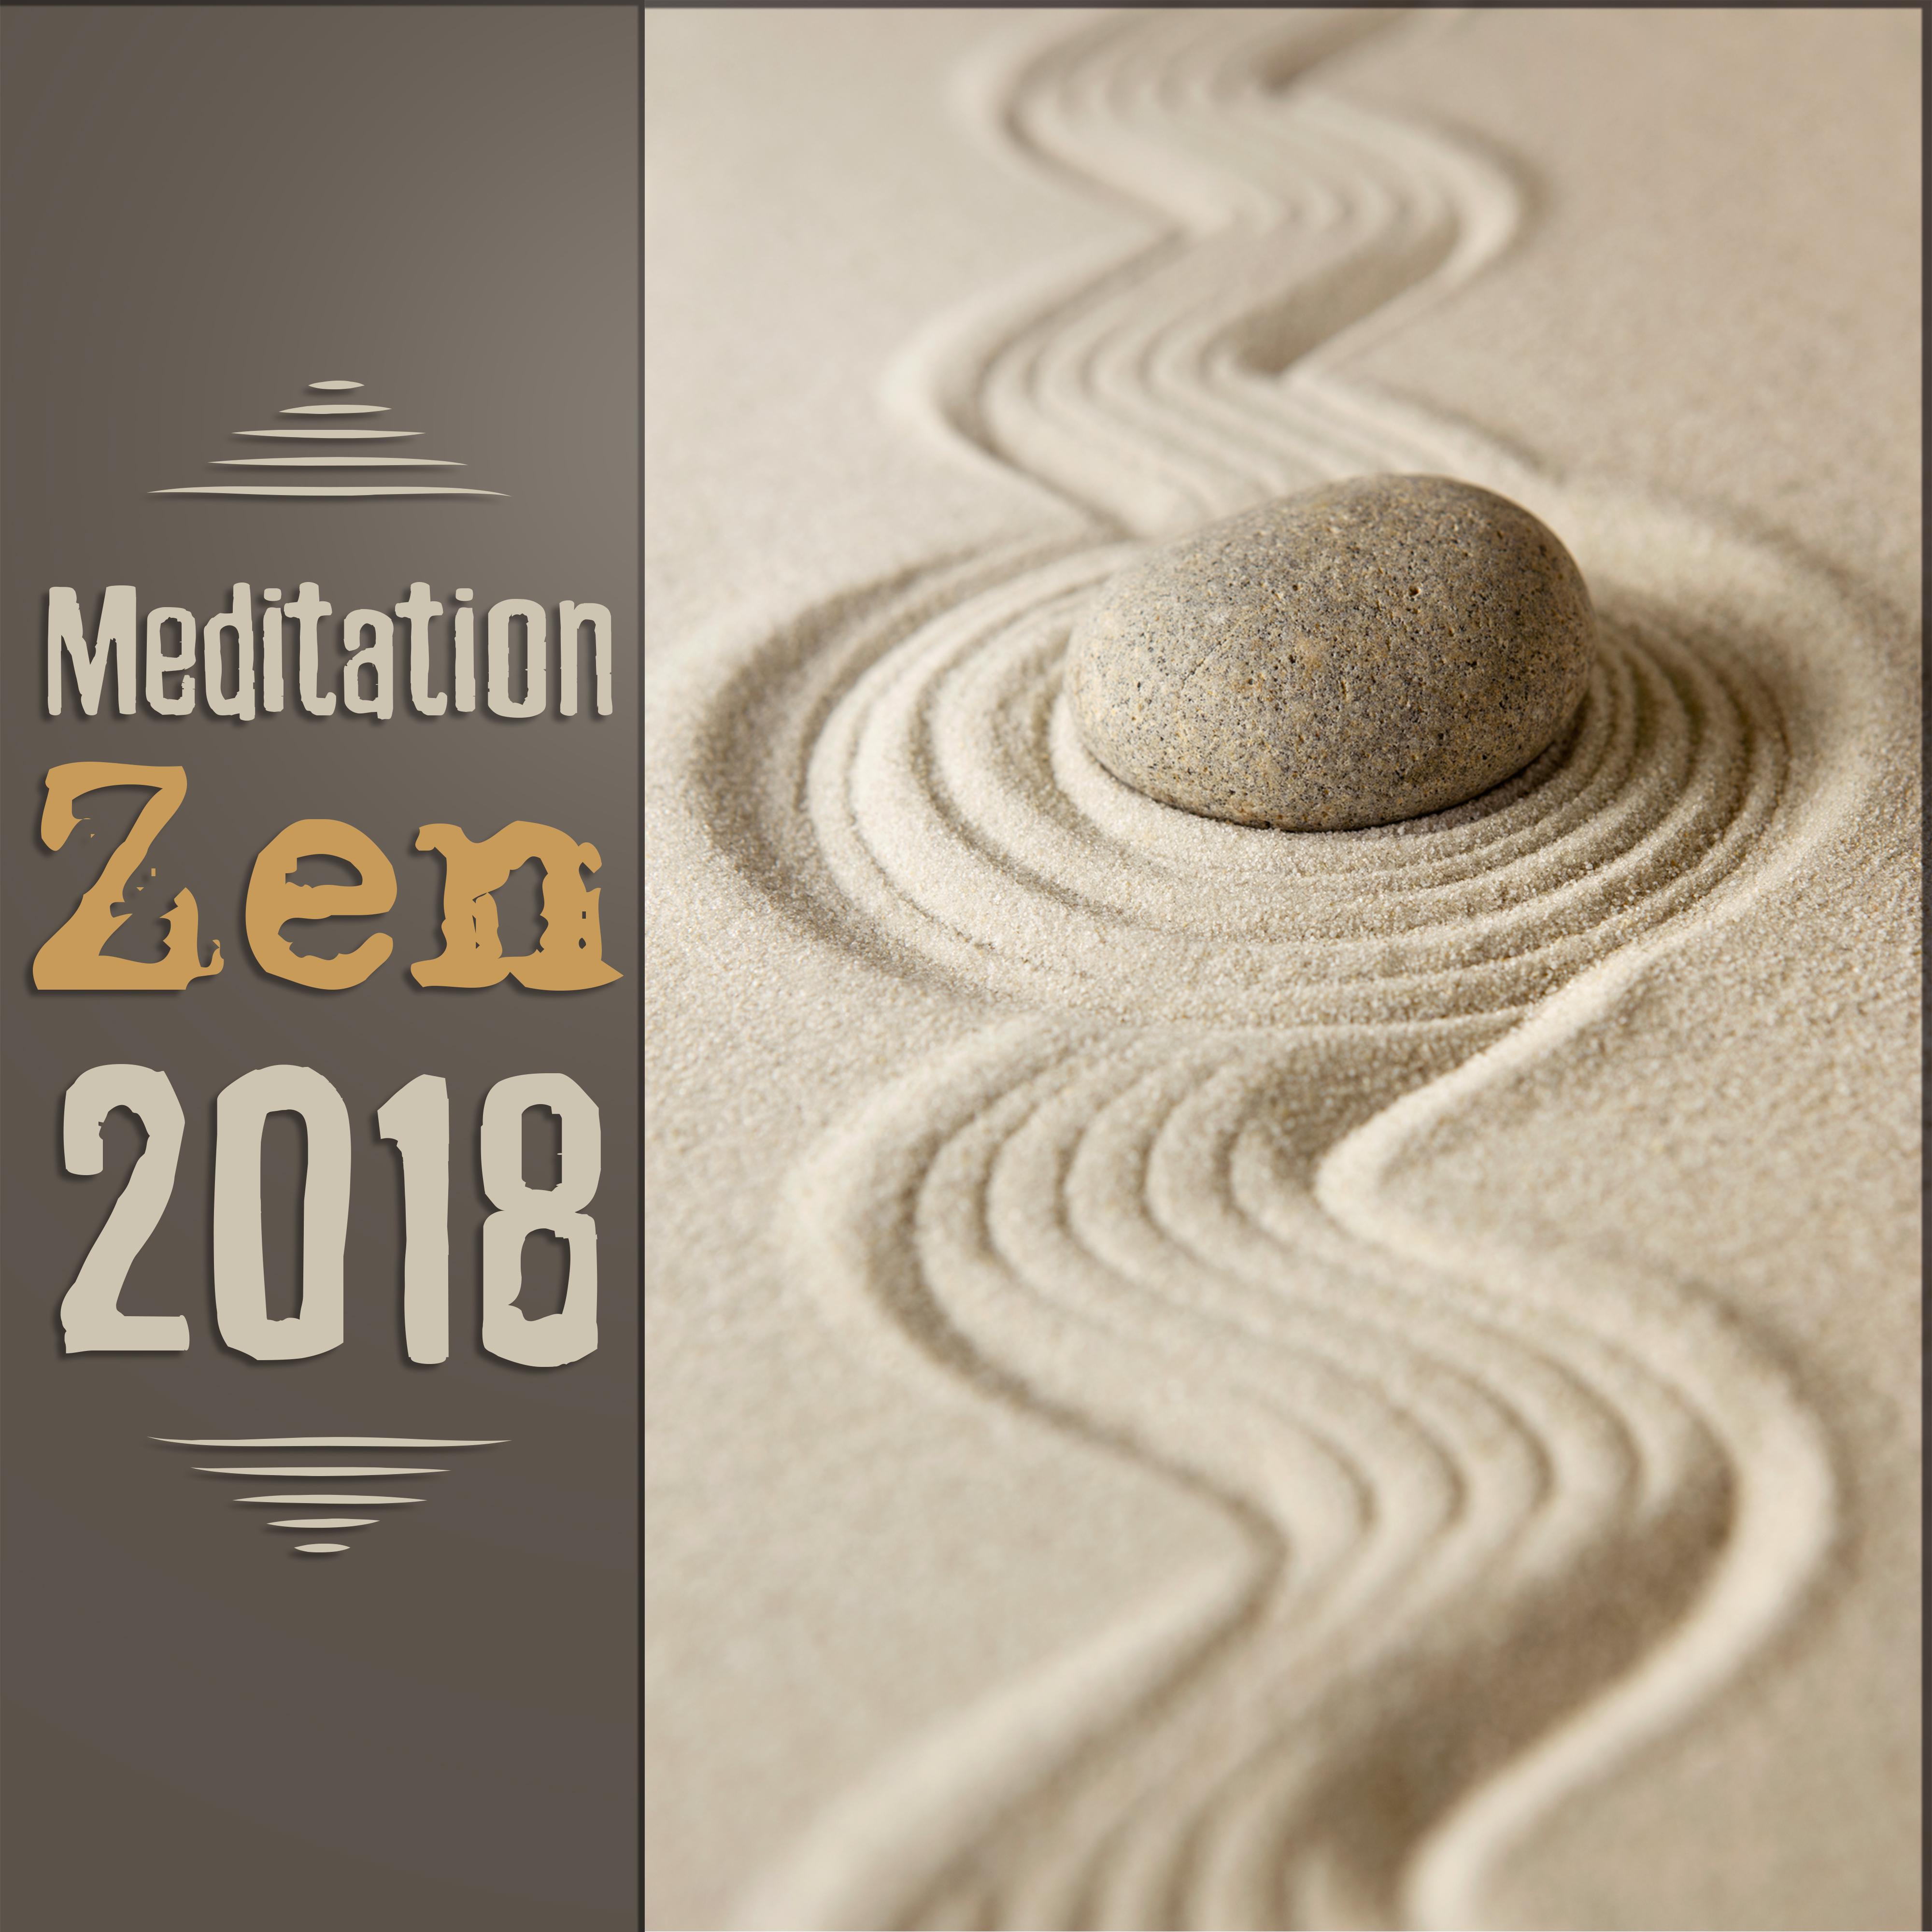 Kundalini Zen